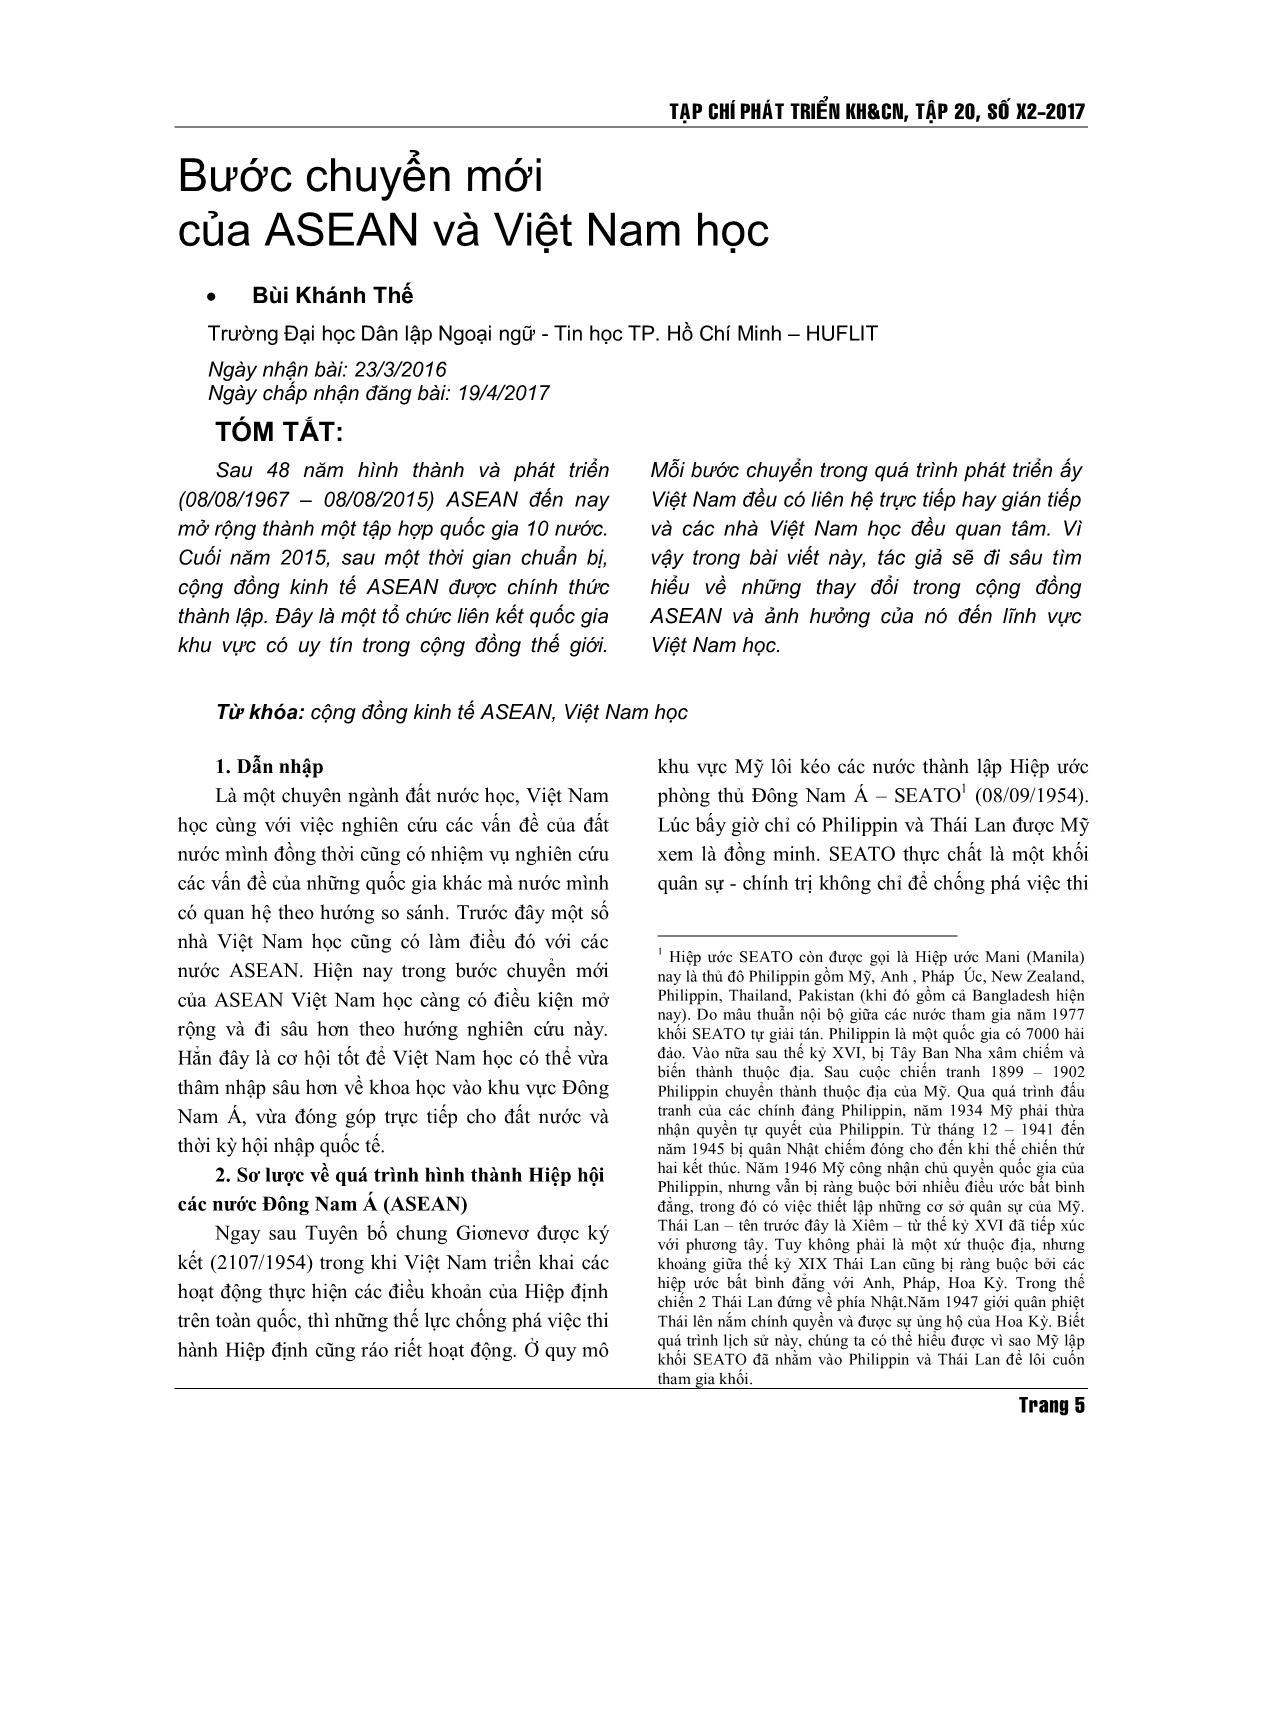 Bước chuyển mới của Asean và Việt Nam học trang 1